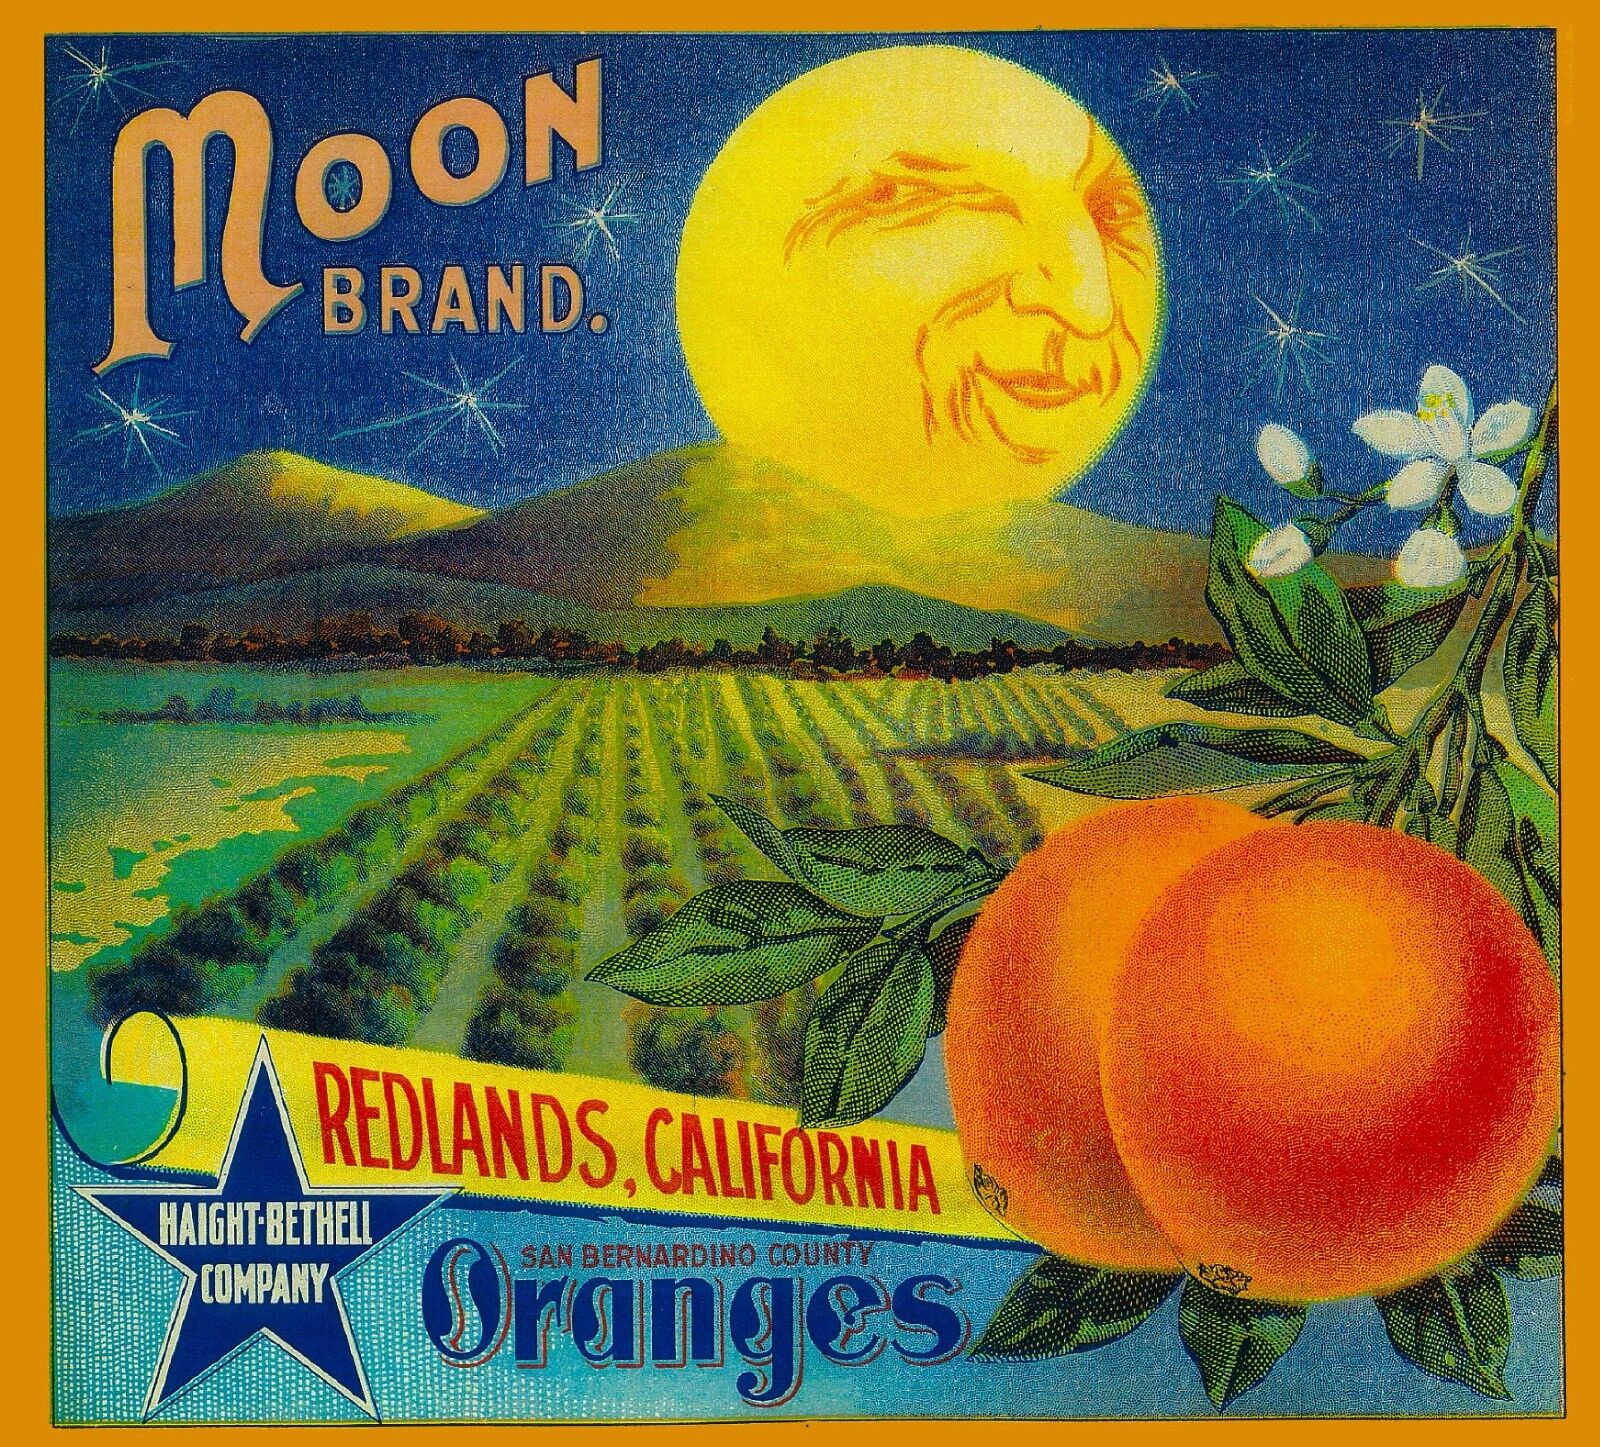 Redlands Moon Brand California Orange Citrus Fruit Crate Label Print